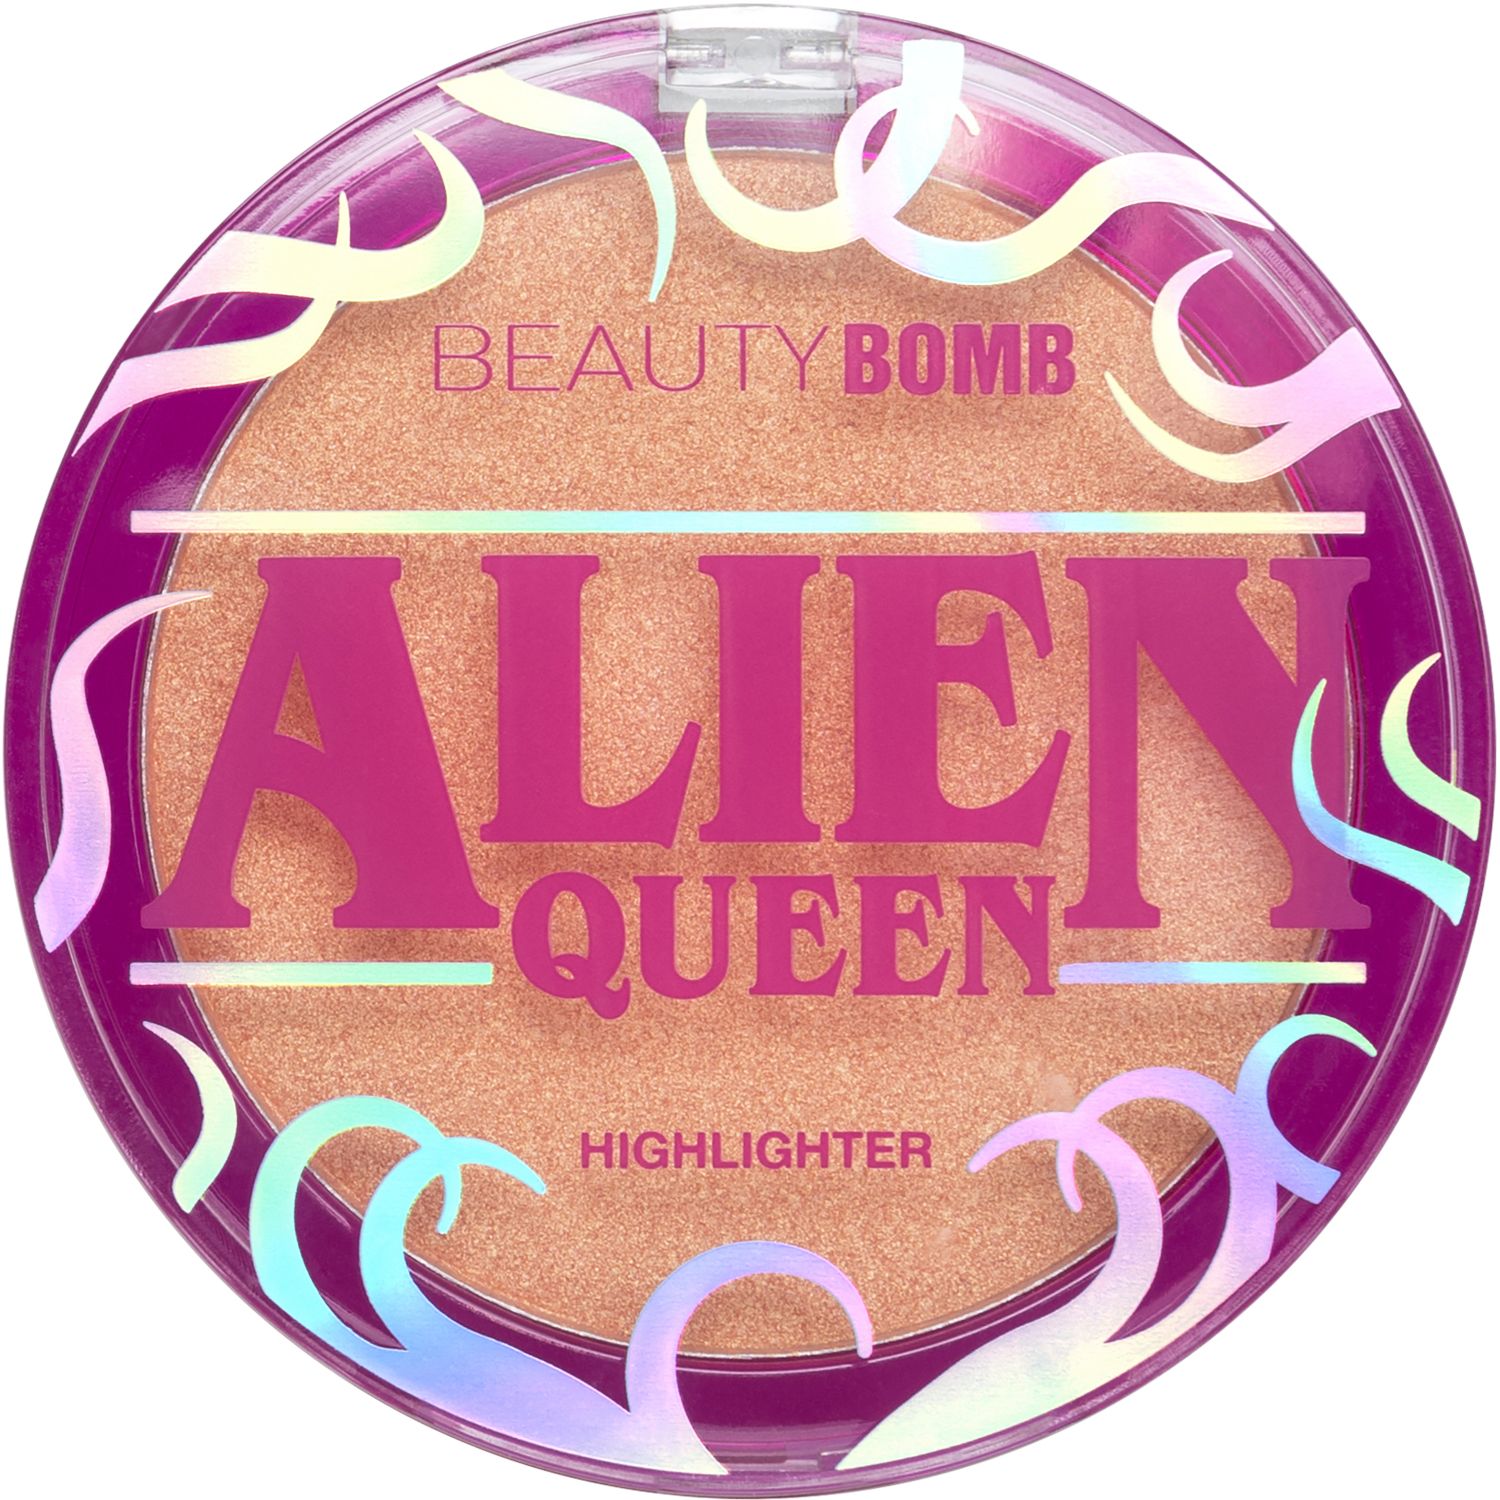 Хайлайтер Beauty Bomb Alien Queen  с золотистым сиянием, персиковый, №01, 6 г